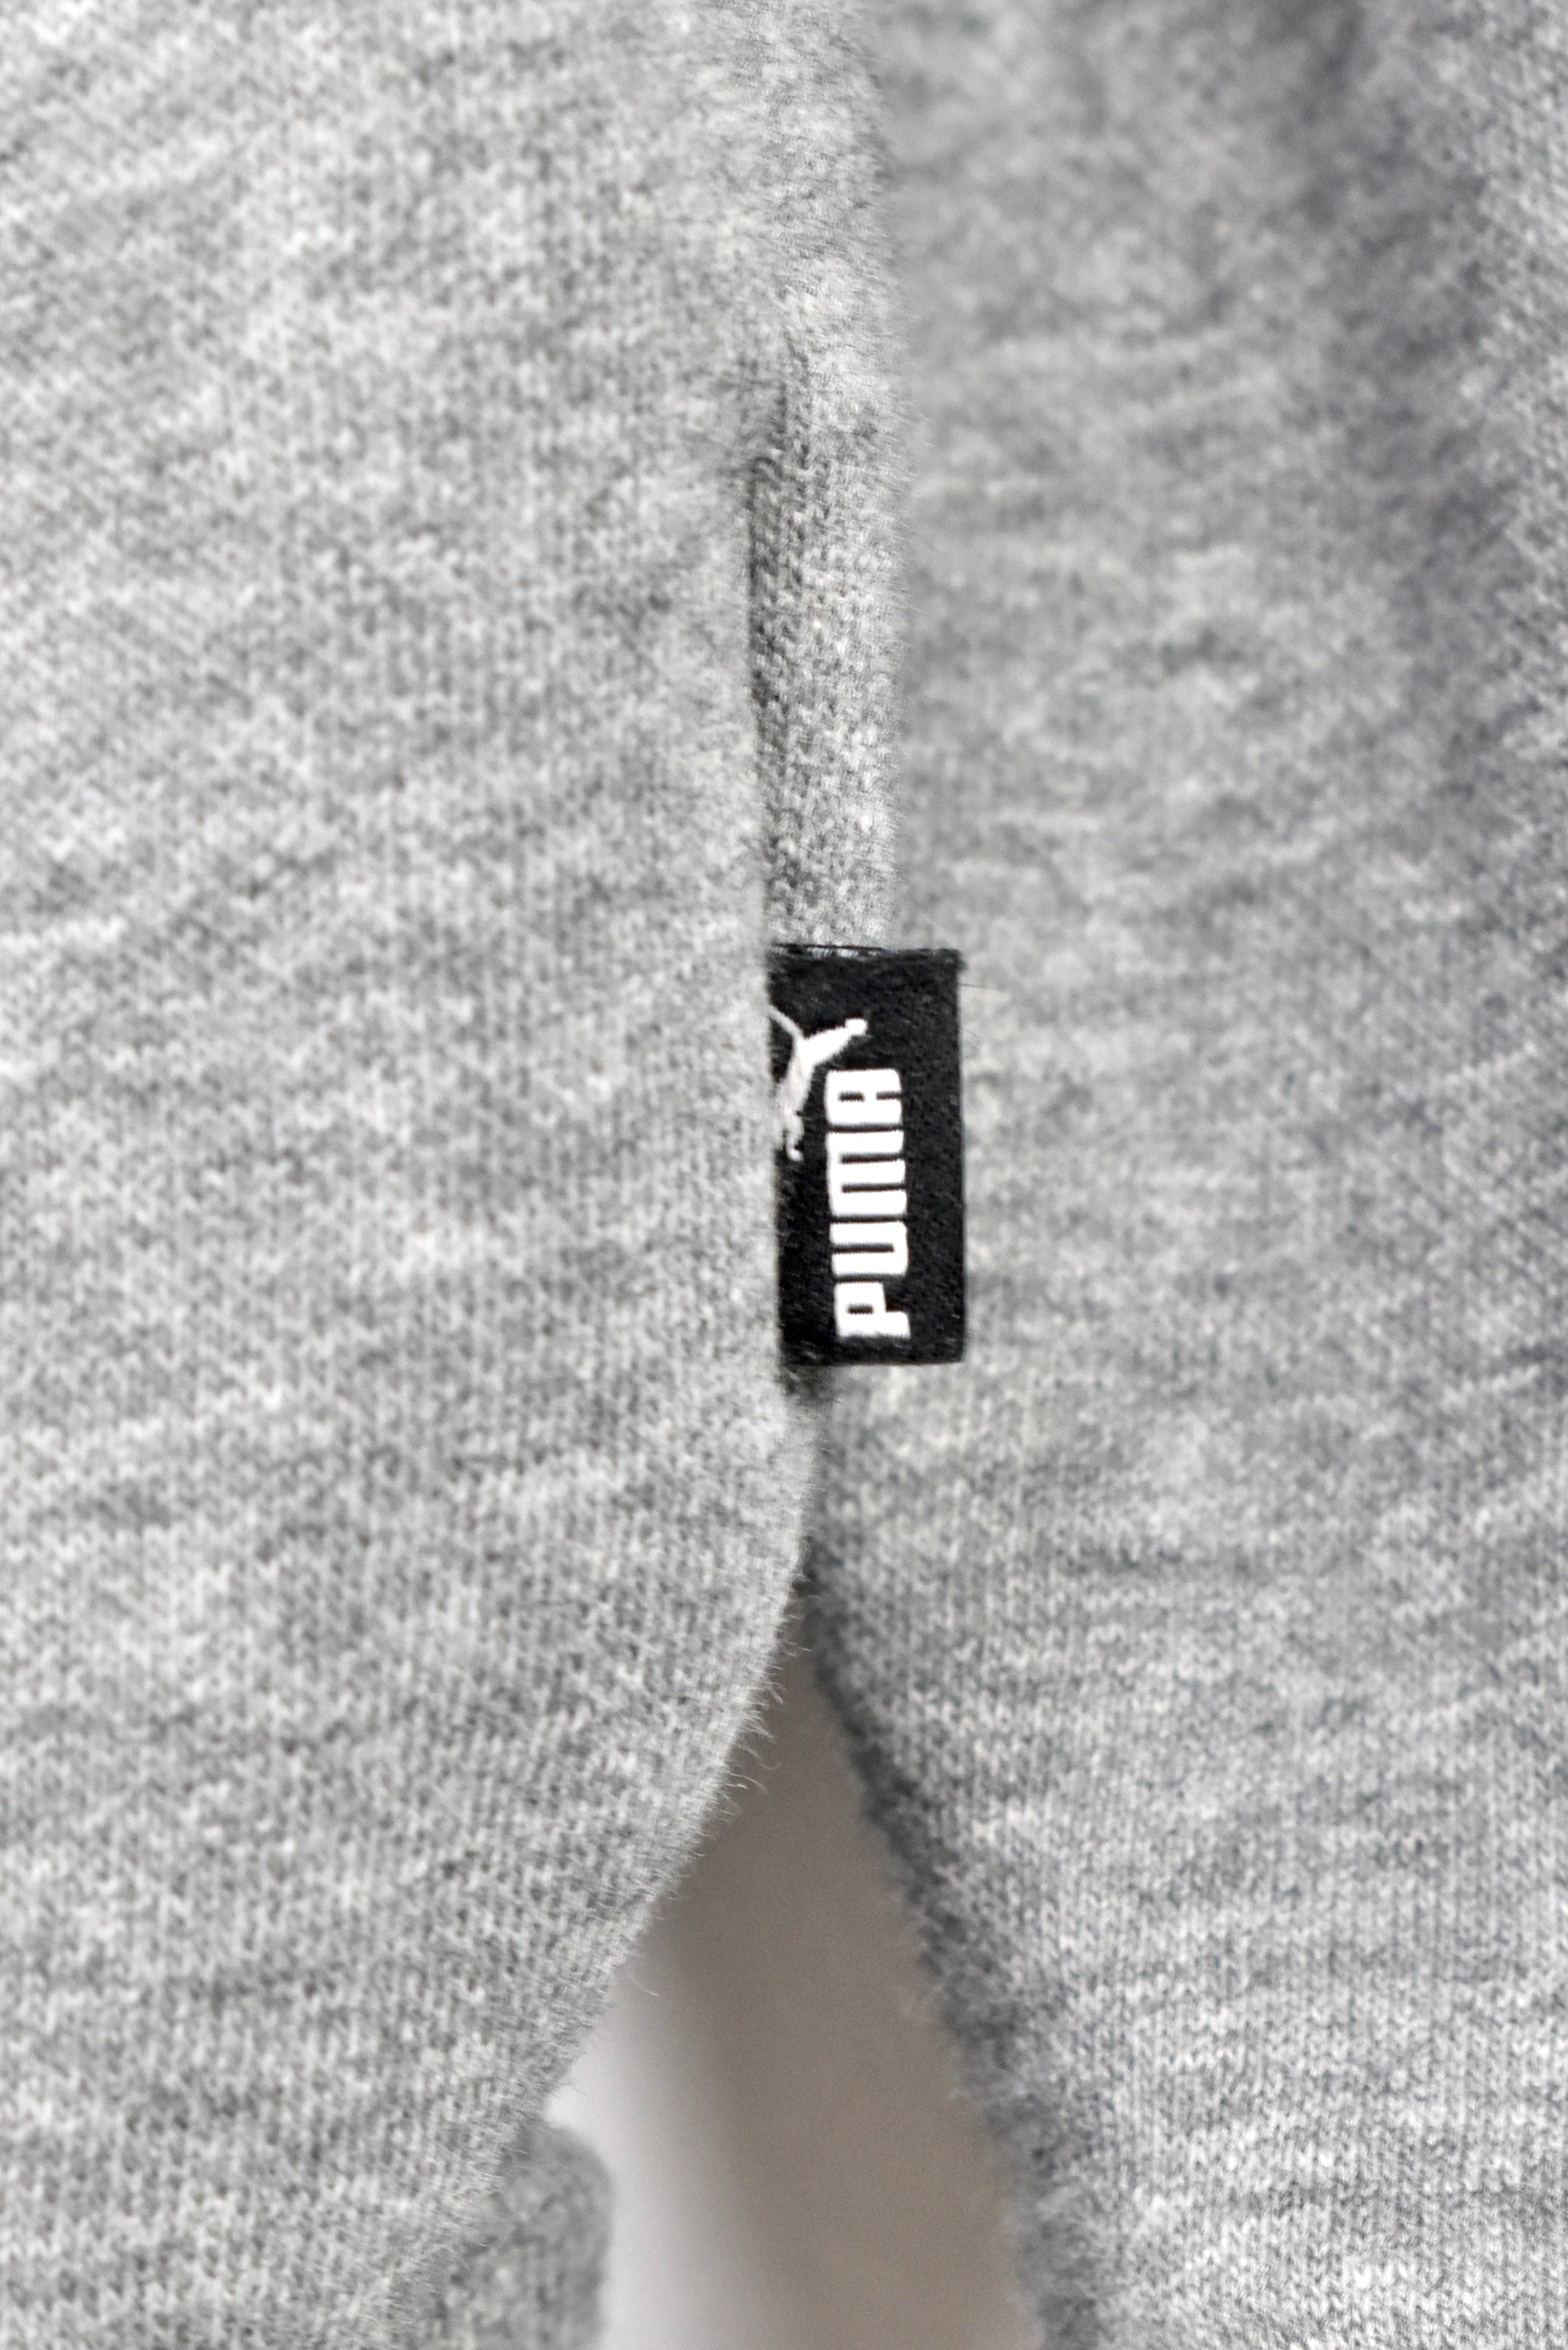 Modern Puma hoodie, grey graphic sweatshirt - AU M PUMA